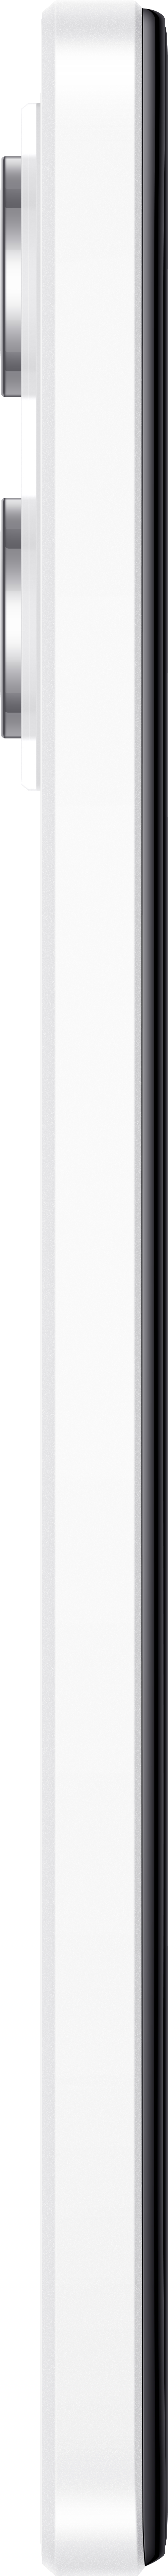 Pro Note White Polar Redmi 12 128 Dual SIM XIAOMI 5G GB